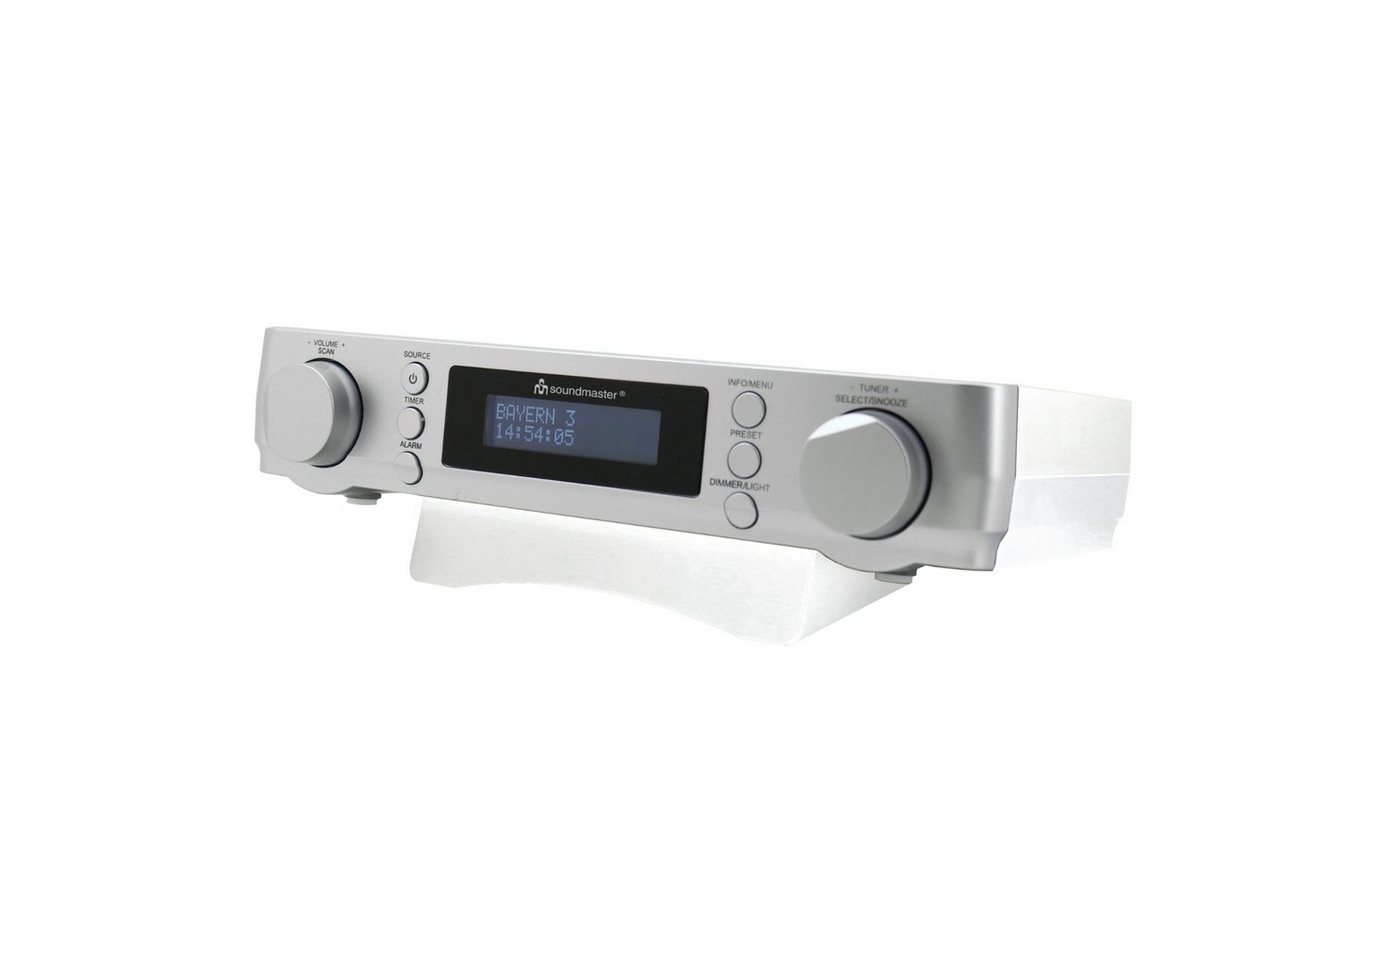 Soundmaster UR2022SI Küchenradio Unterbauradio DAB+ UKW-RDS Timer Wecker LED Küchen-Radio (DAB+, UKW/FM, RDS-Radio, 2 W) von Soundmaster